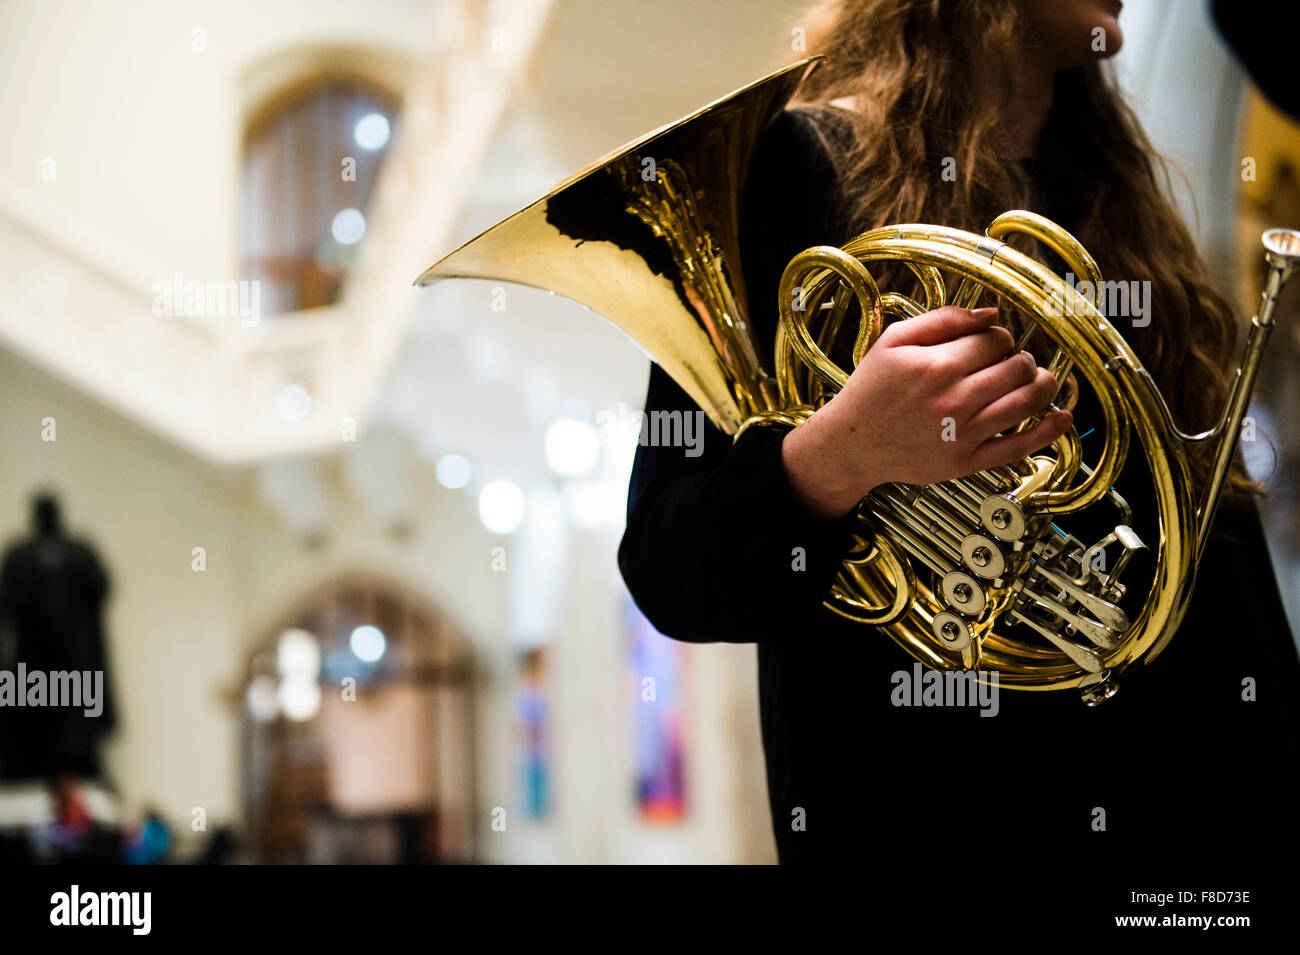 Giovani musicisti: musica classica french horn player in prove in Aber Music Fest Festival 2015 Foto Stock